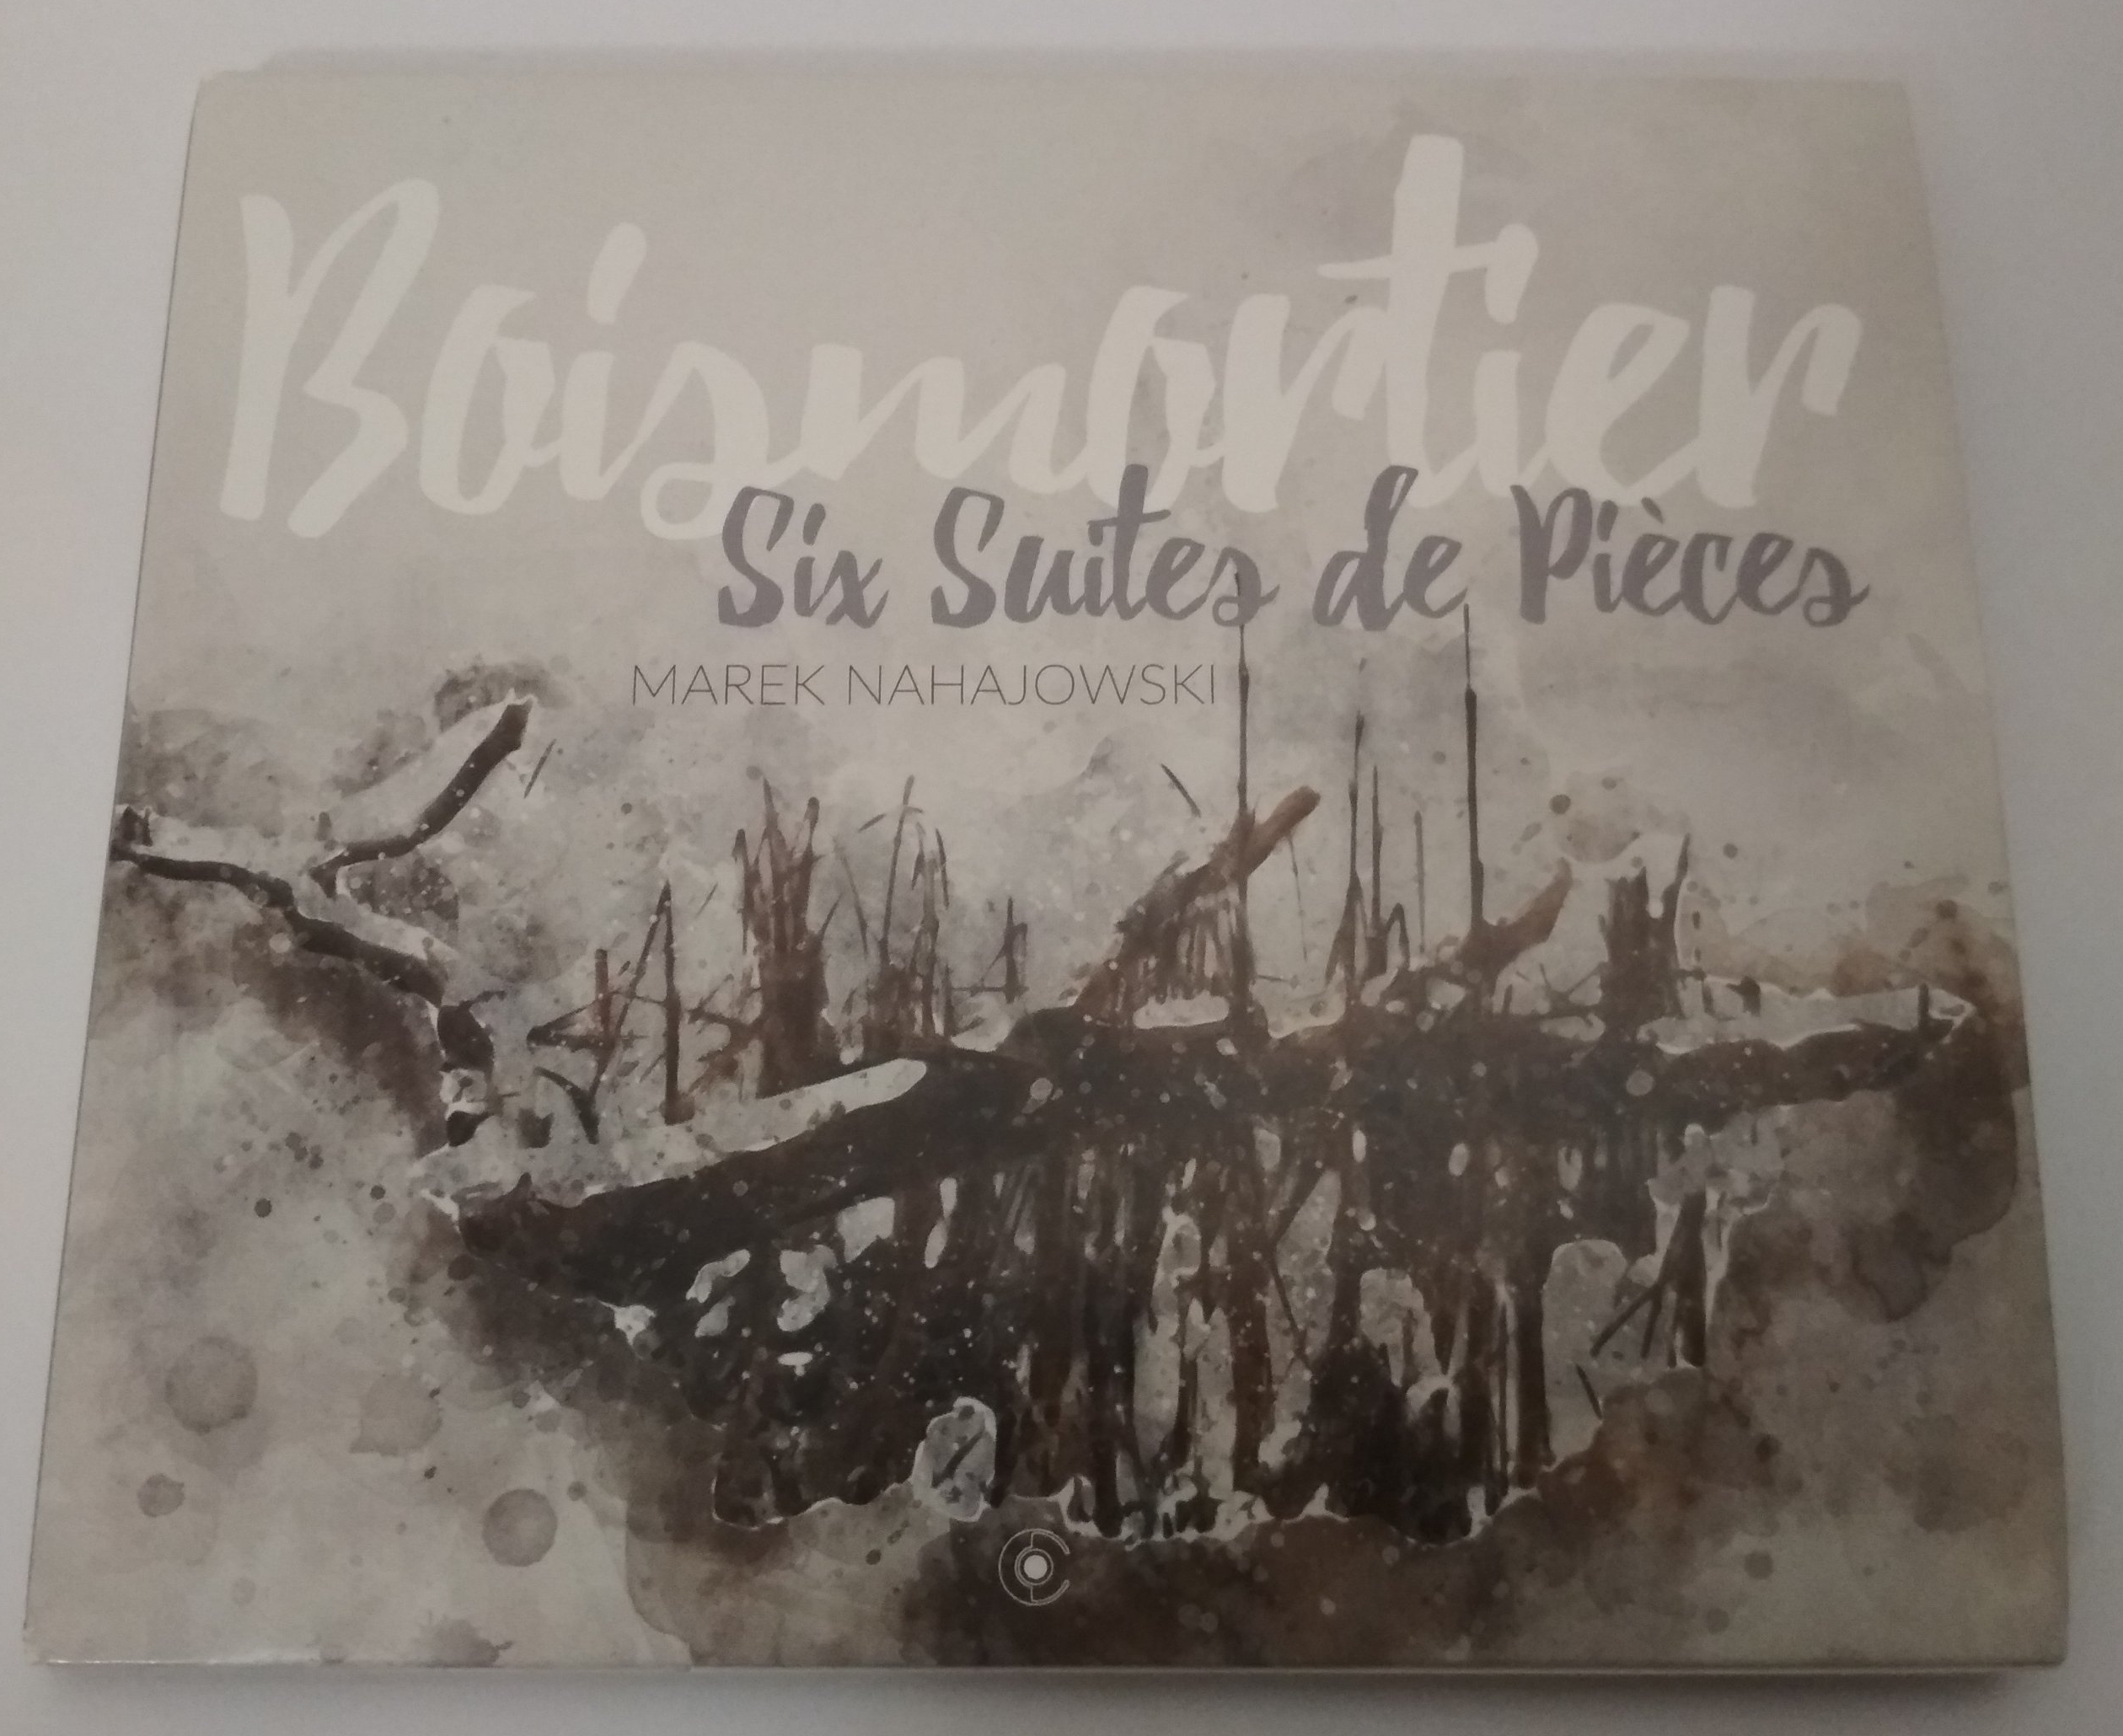 Kovrilo de la muzikdisko “Boismortier – Six suites de pièces”.